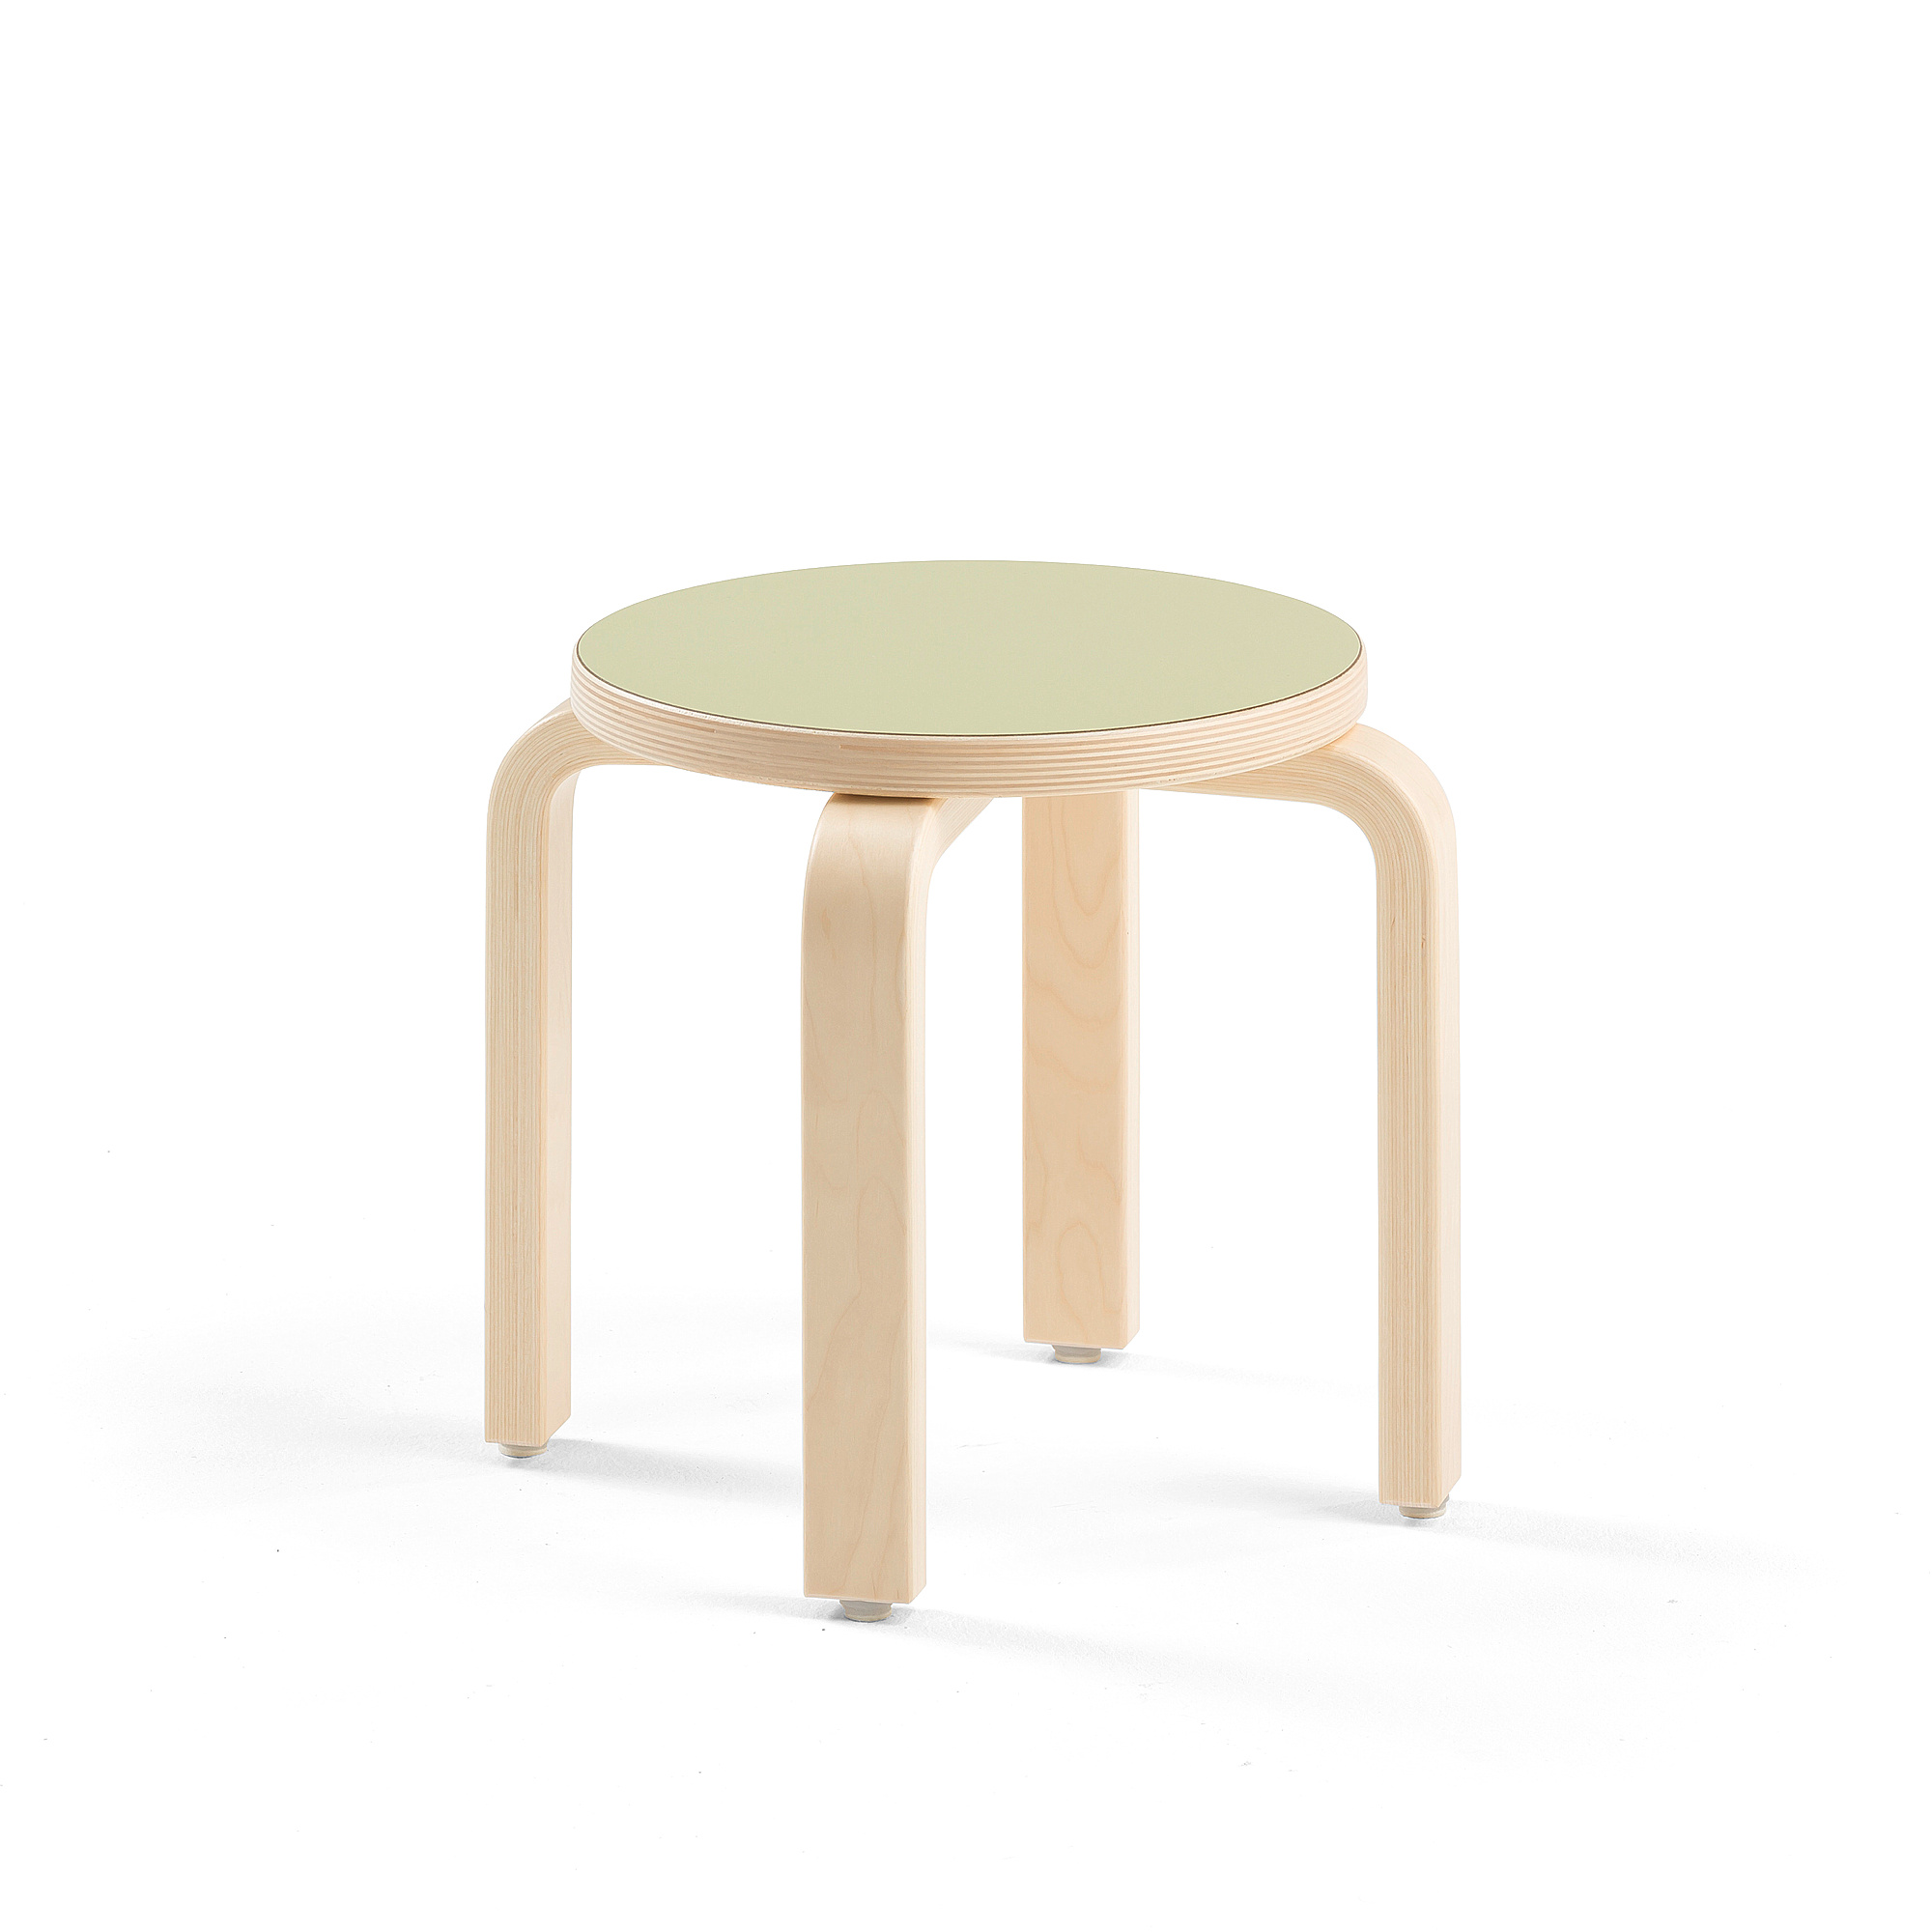 Dětská stolička DANTE, výška 310 mm, bříza/zelená